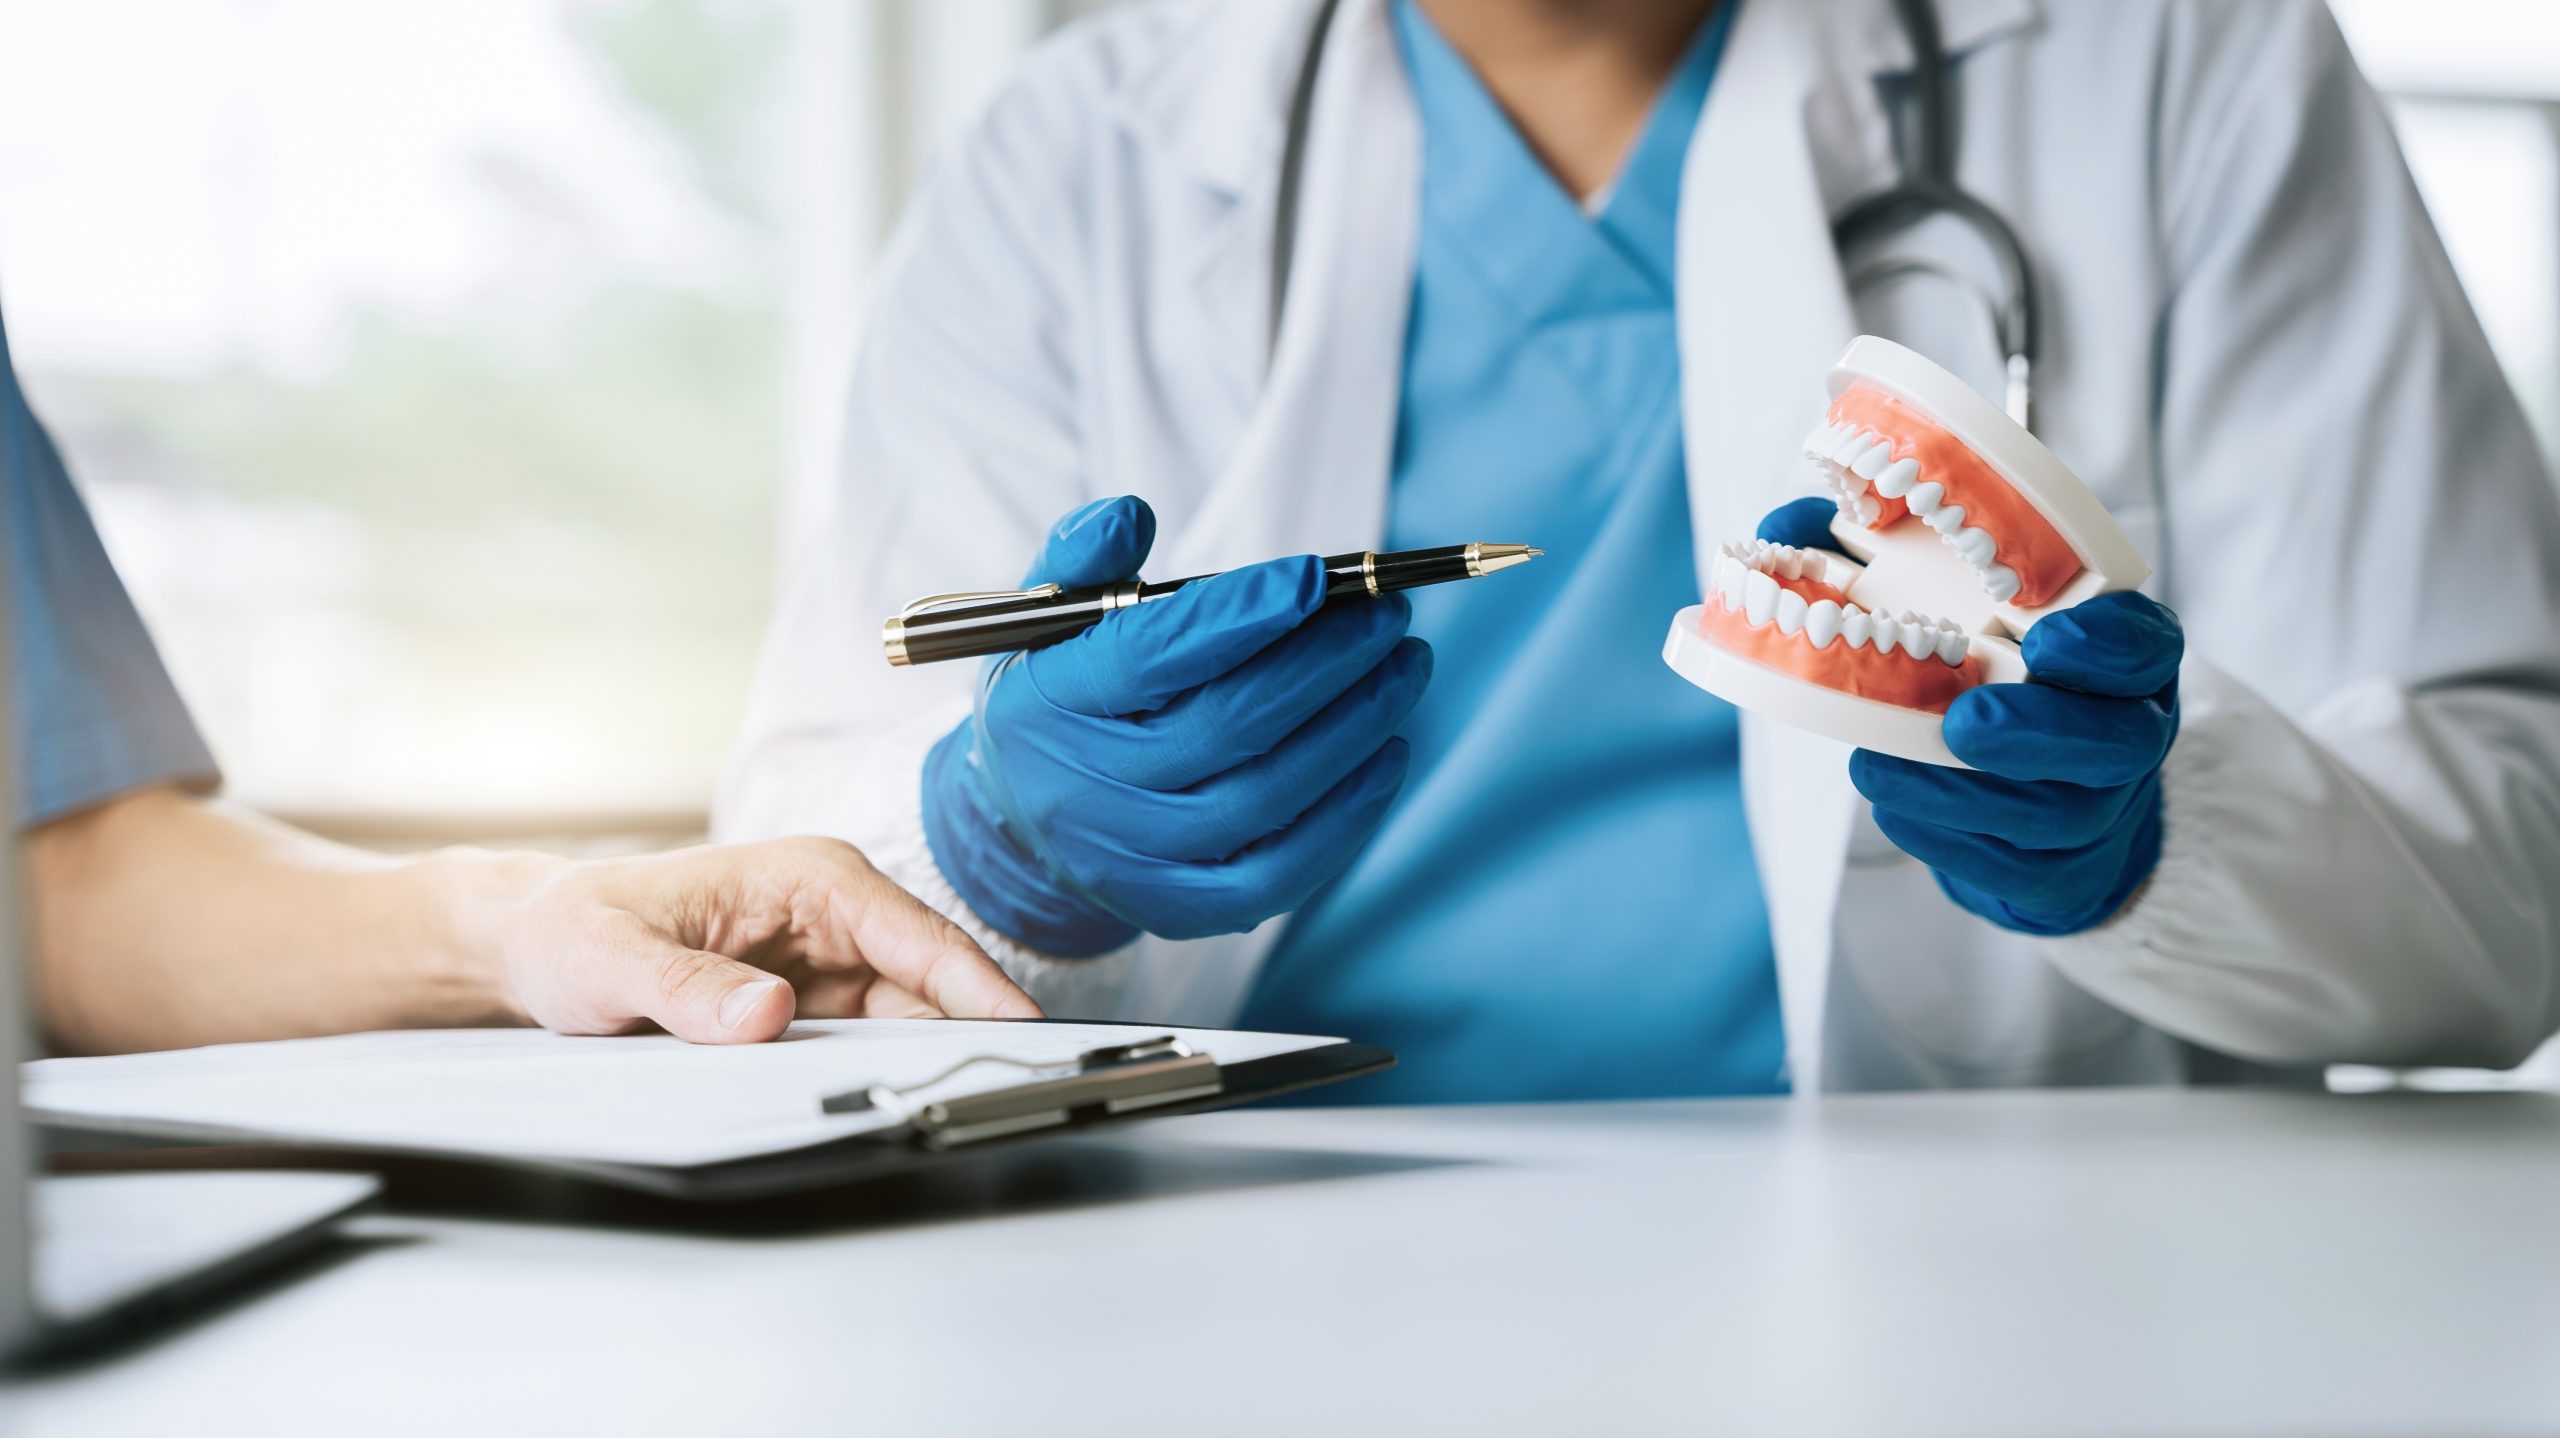 La figura dell’Odontoiatra, o dentista, svolge una importante funzione nel sistema sanitario, avendo cura della salute orale dei pazienti e migliorandone la qualità della vita.